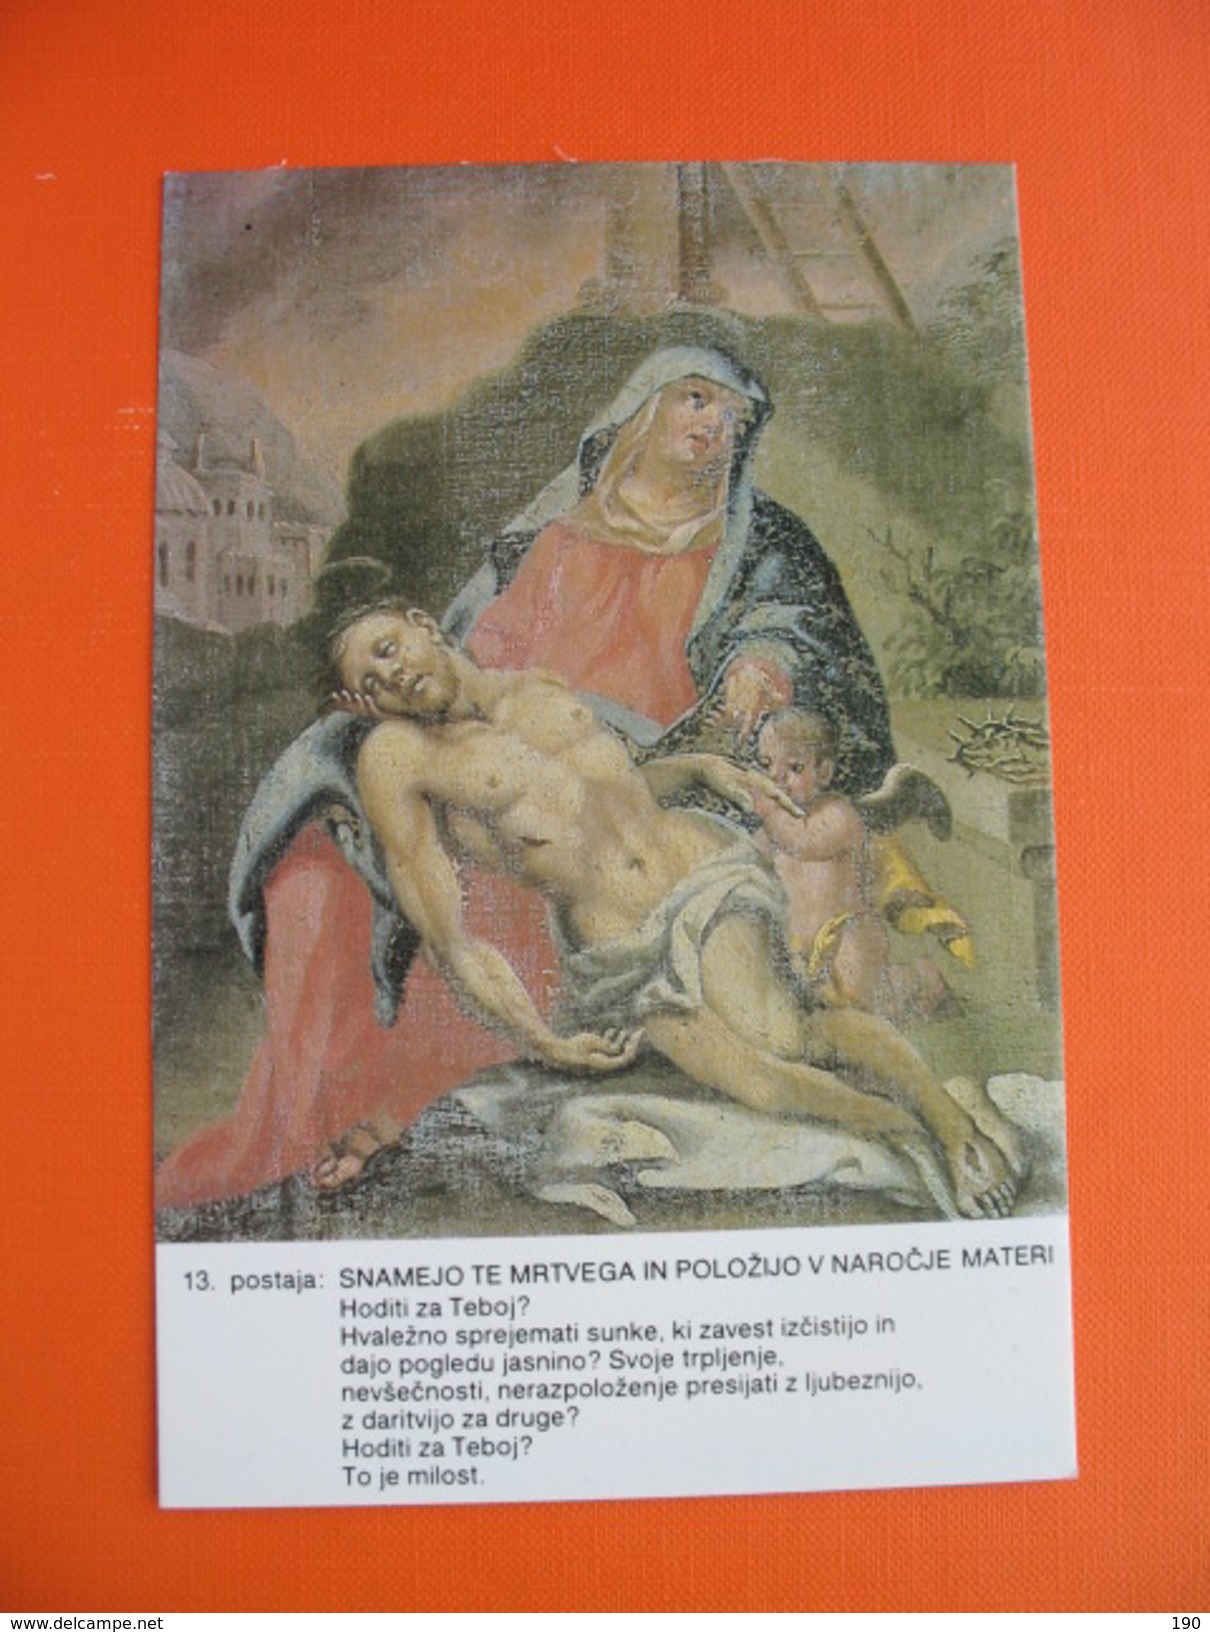 14 postcards.SVETI KRIZEV POT,neznan avtor.Cerkev sv.Jakoba Naklo,zupnija Crnomelj